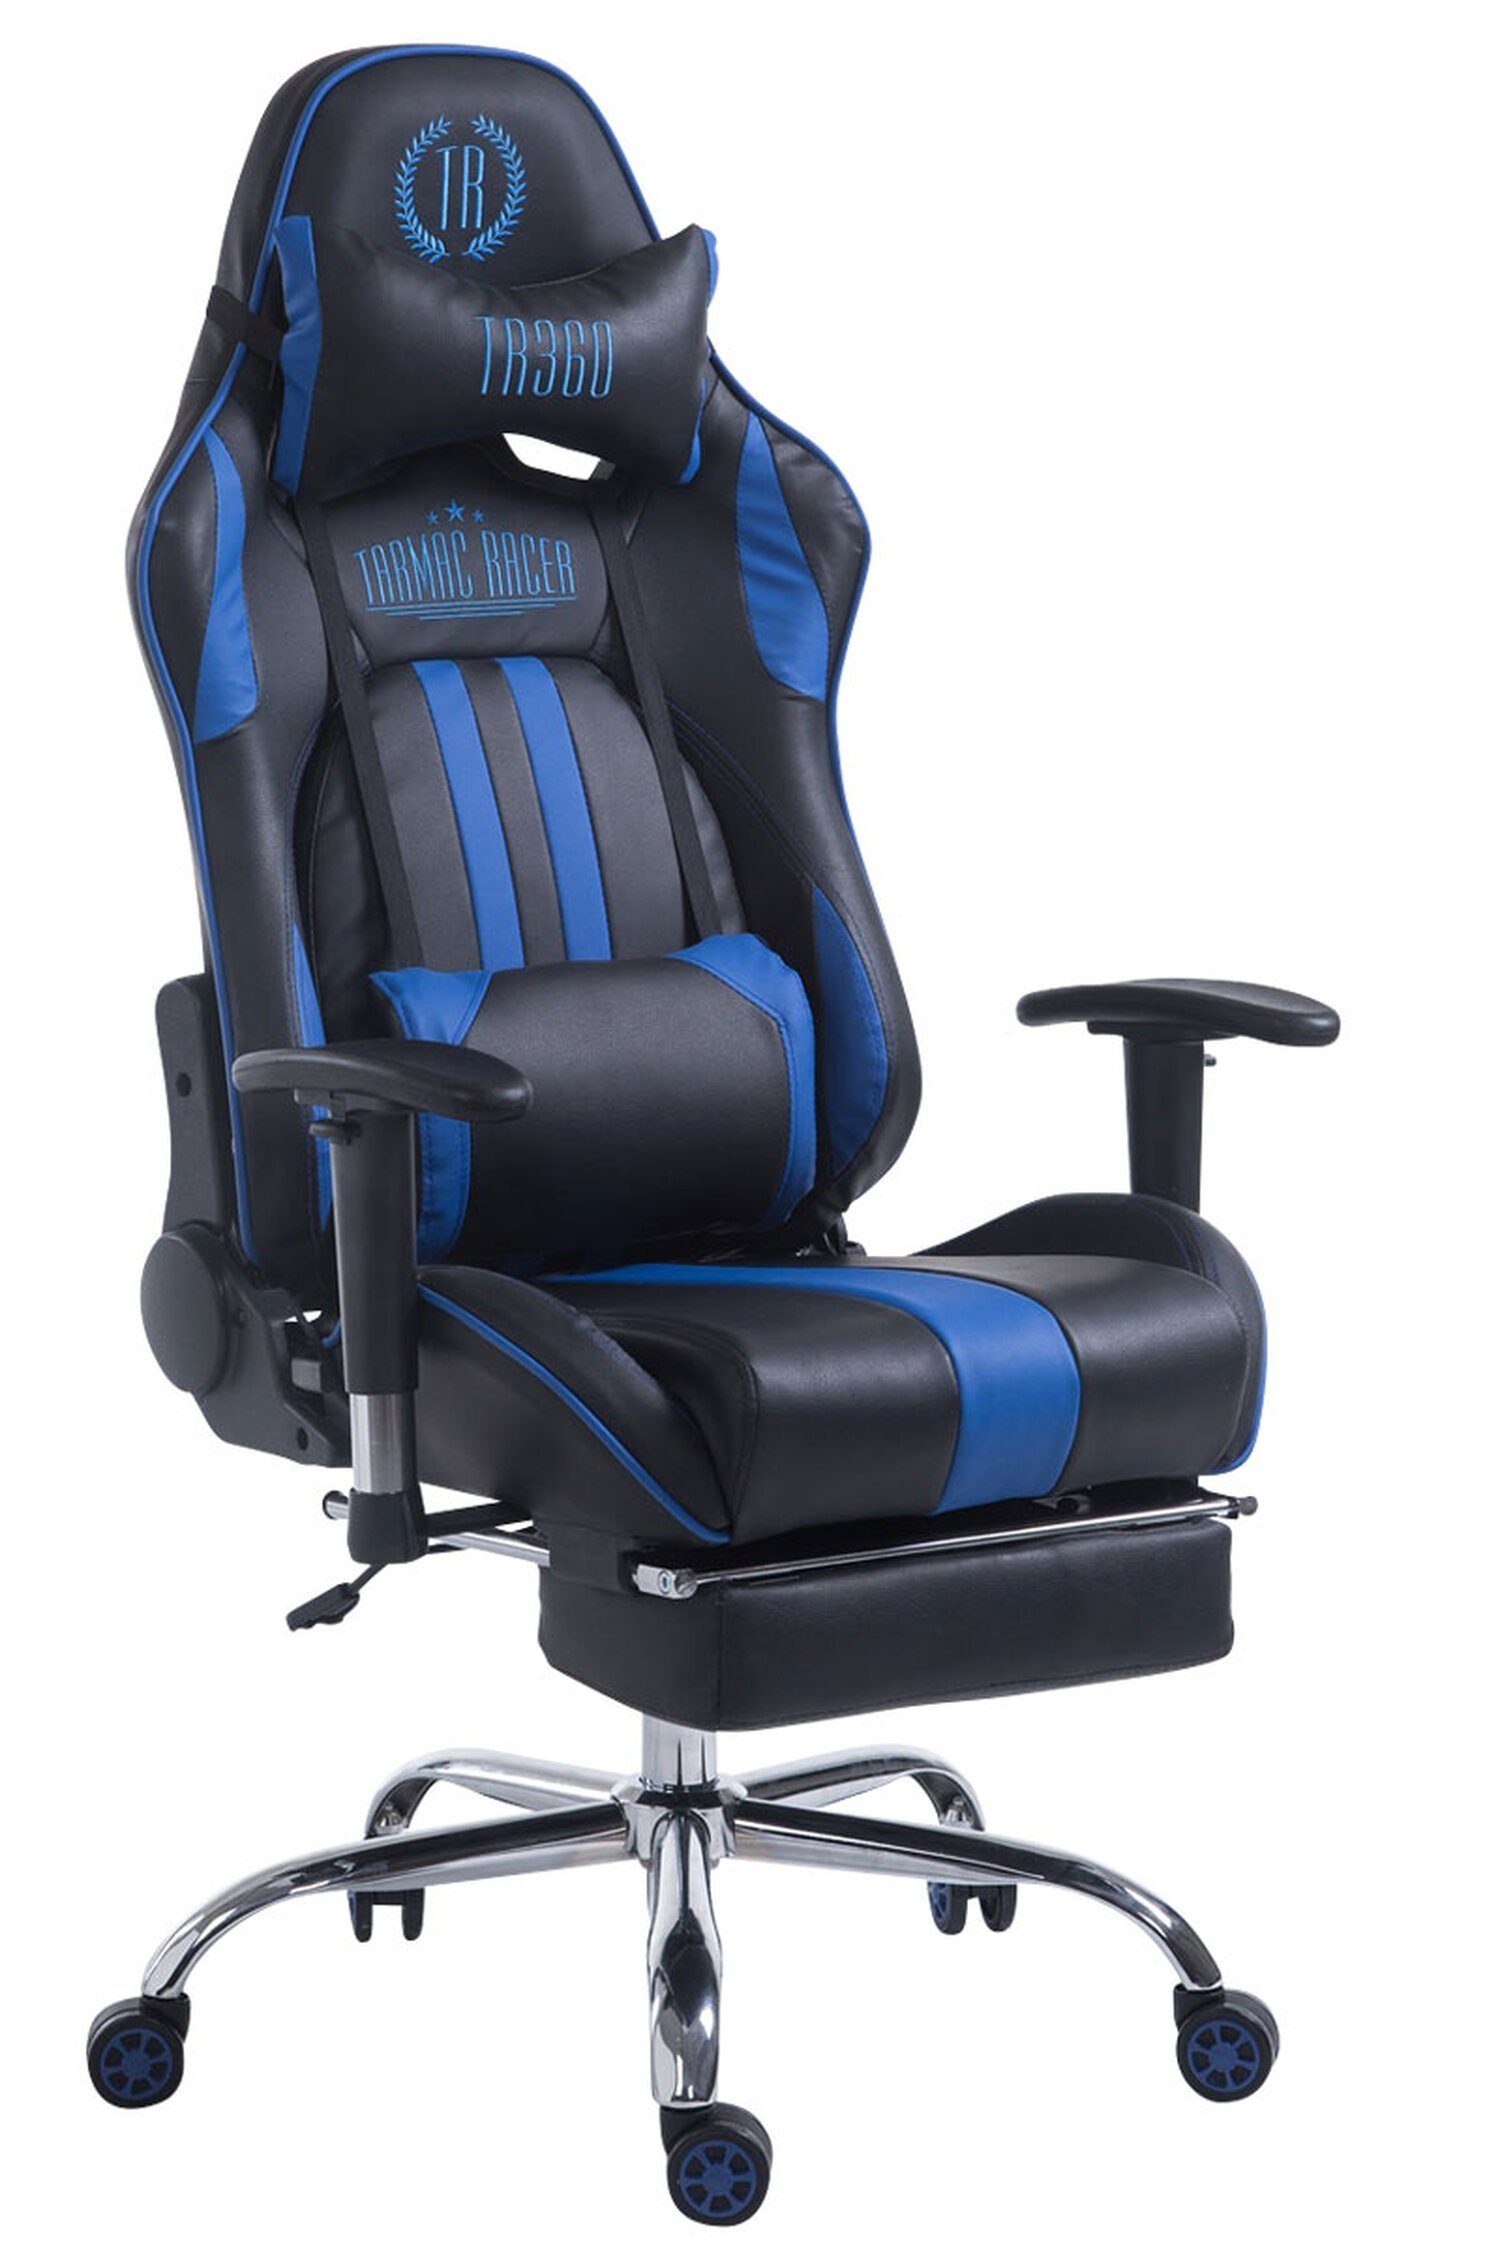 TPFLiving Gaming-Stuhl Limitless mit bequemer Rückenlehne - höhenverstellbar und 360° drehbar (Schreibtischstuhl, Drehstuhl, Gamingstuhl, Racingstuhl, Chefsessel), Gestell: Metall chrom - Sitzfläche: Kunstleder schwarz/blau